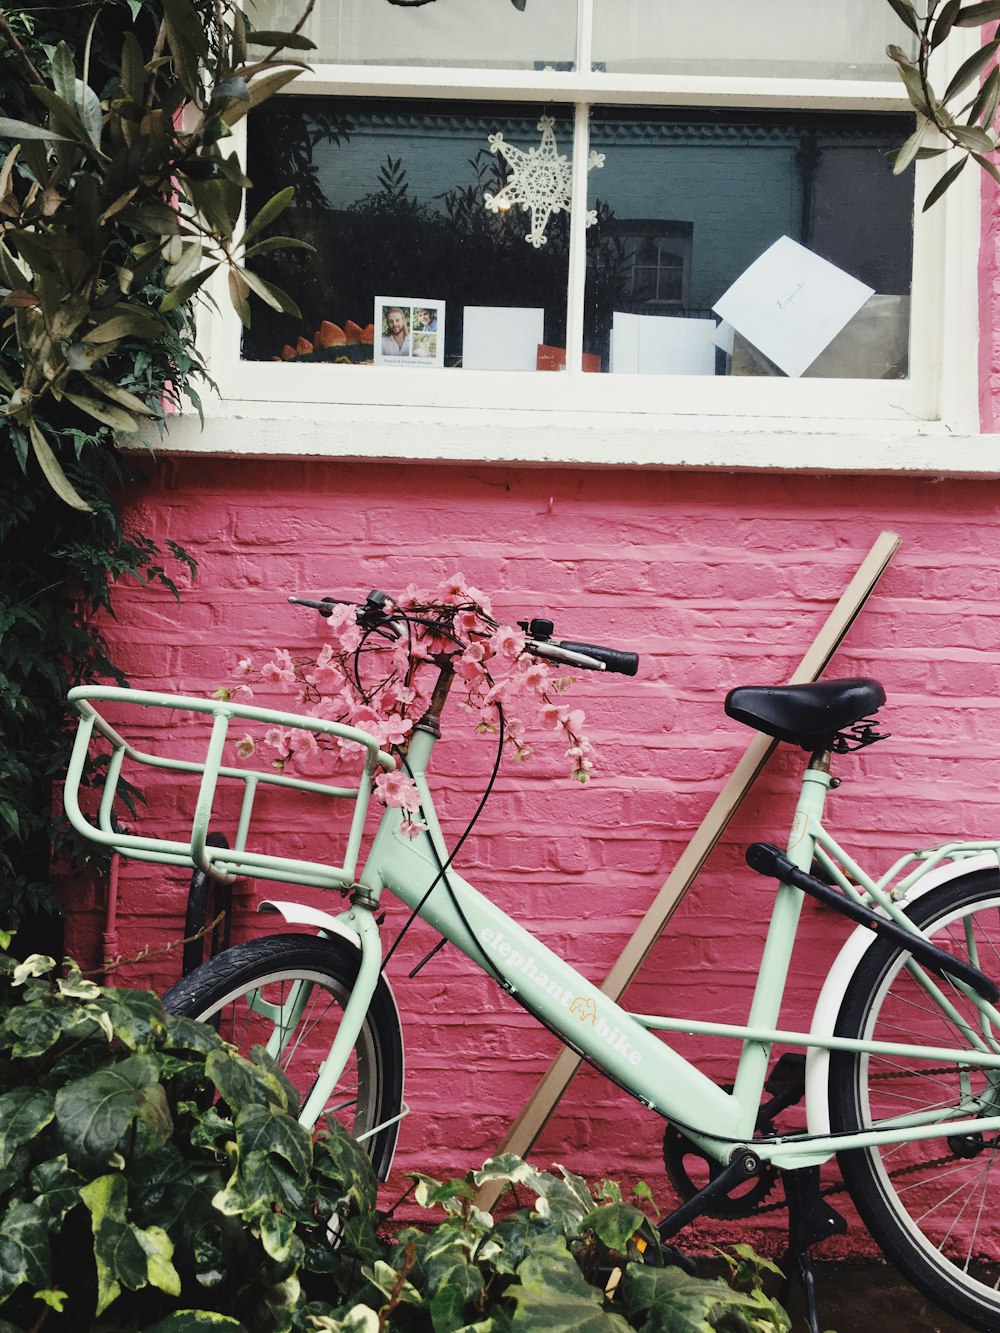 white commuter bike leaning on house photo – Free Londres Image on Unsplash